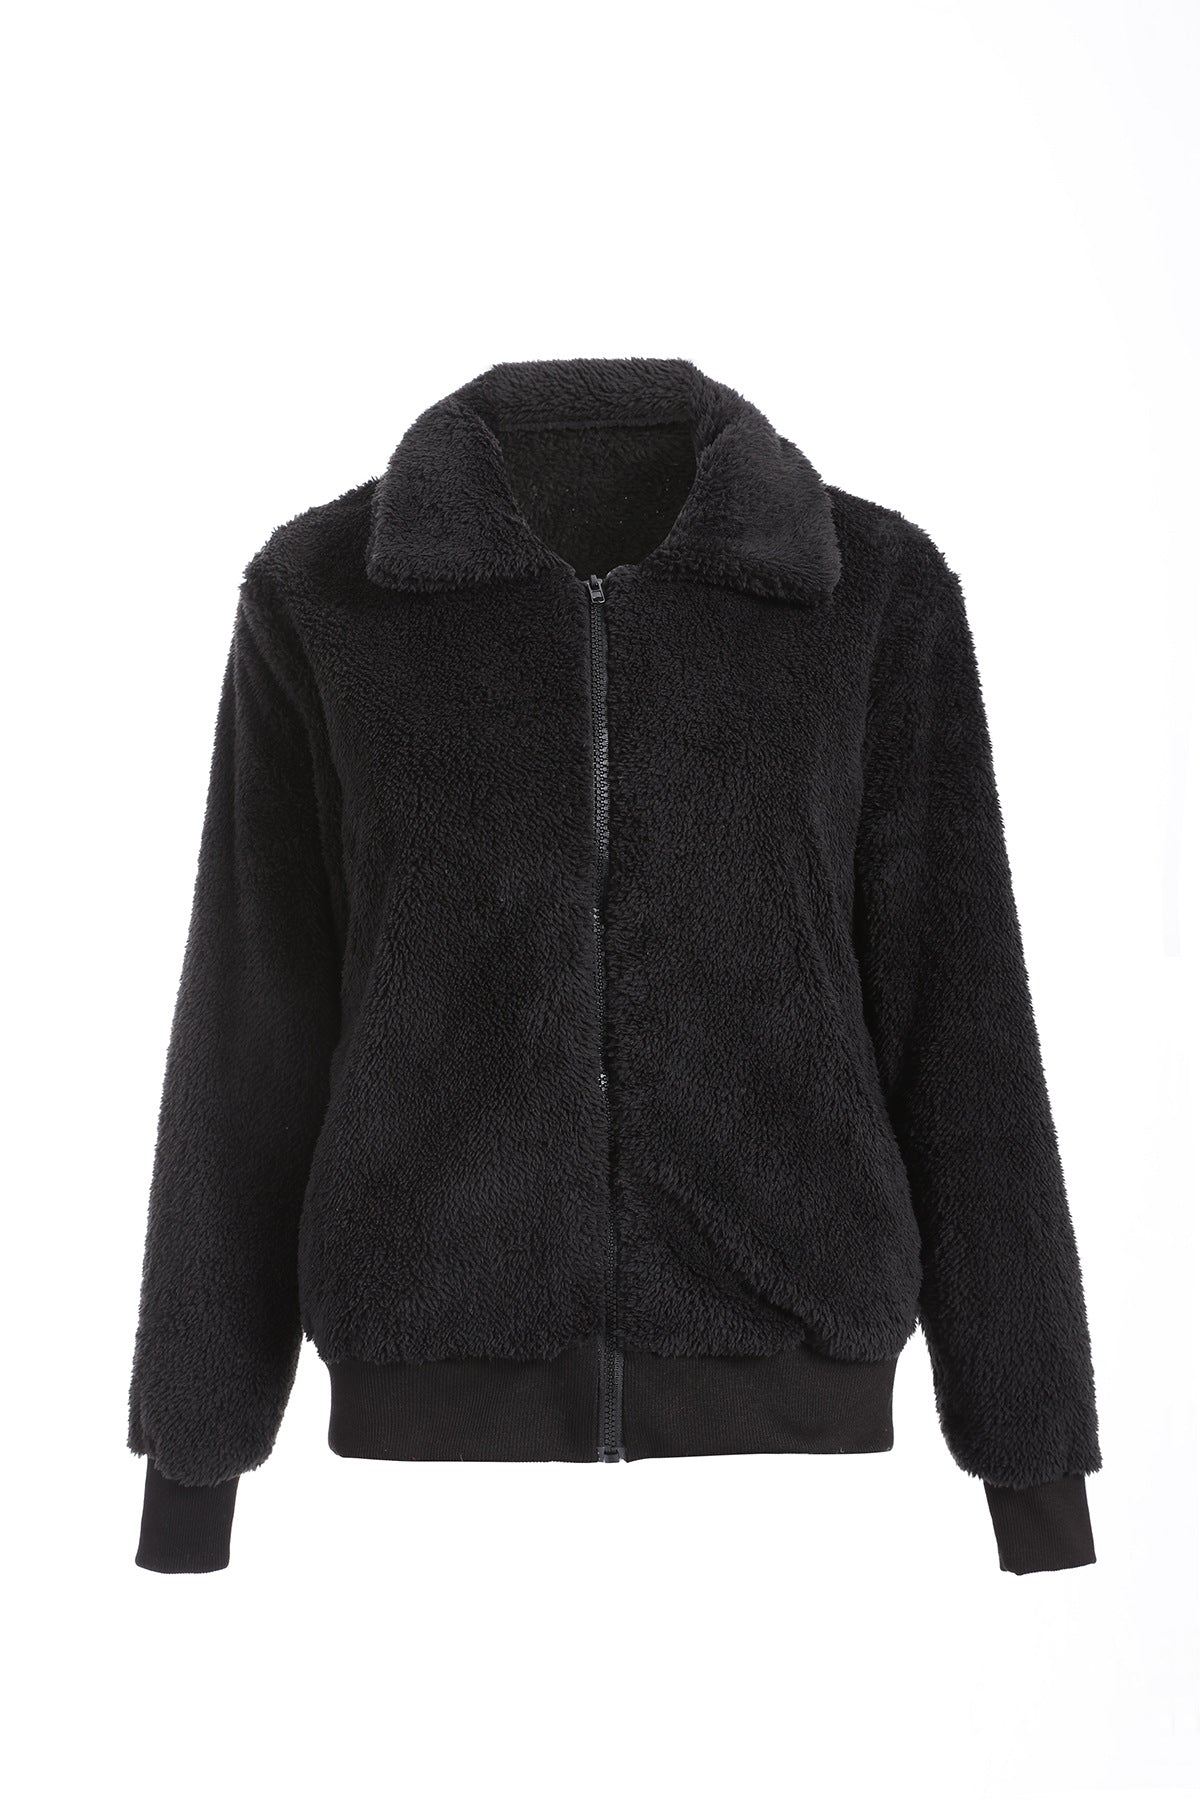 Winter Autumn Women Lapel Zipper Jacket Coat - ladieskits - 0